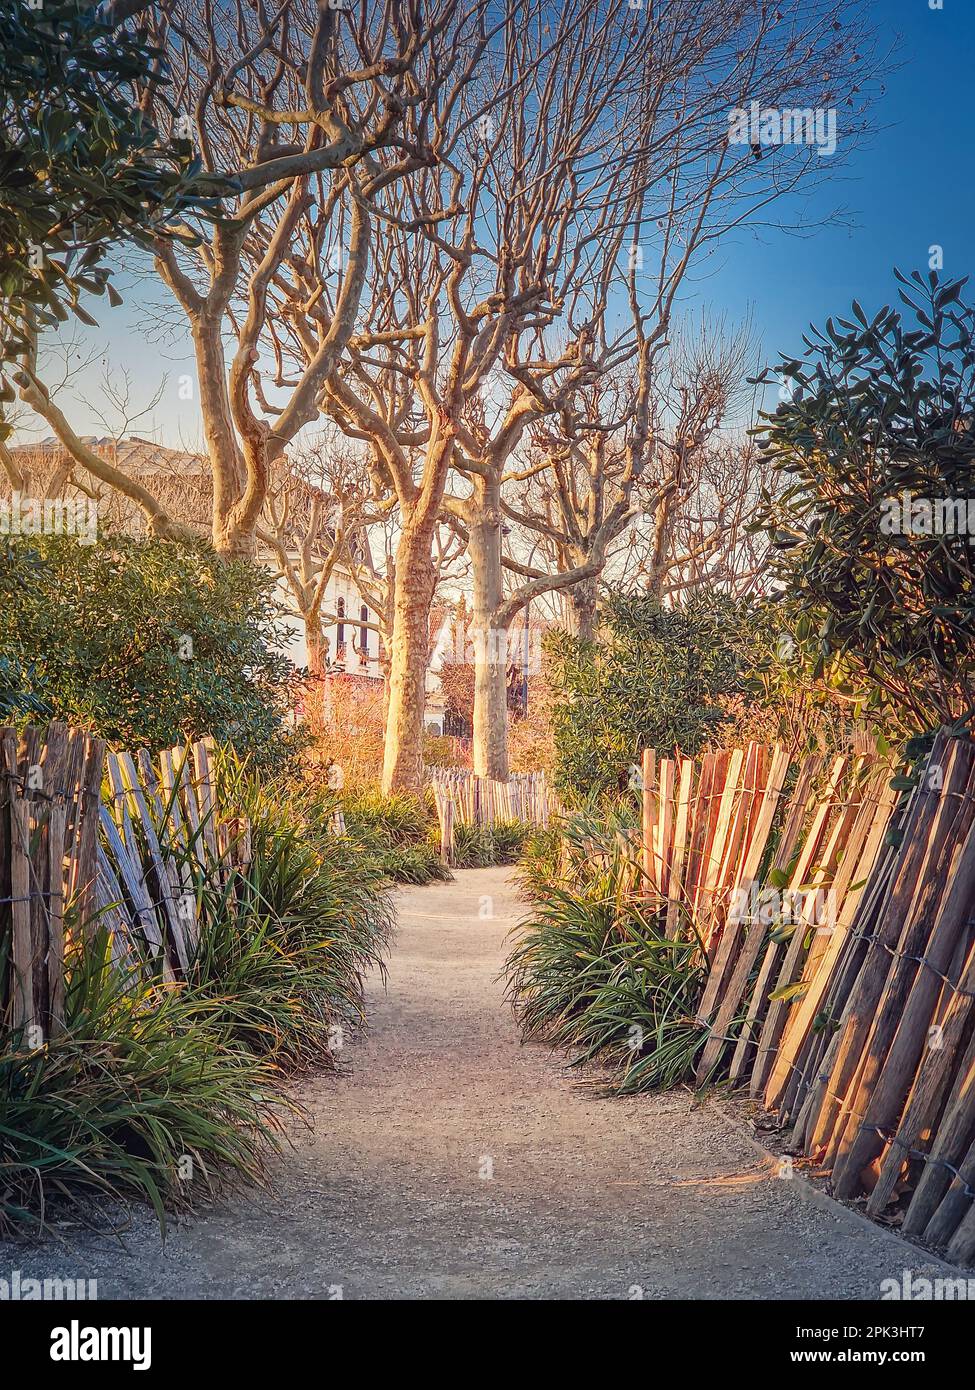 Stretto sentiero nel parco lungo recinzione in legno, piante e alberi di sicomoro nella piazza di Asnieres-sur-Seine mairie, Parigi, Francia Foto Stock